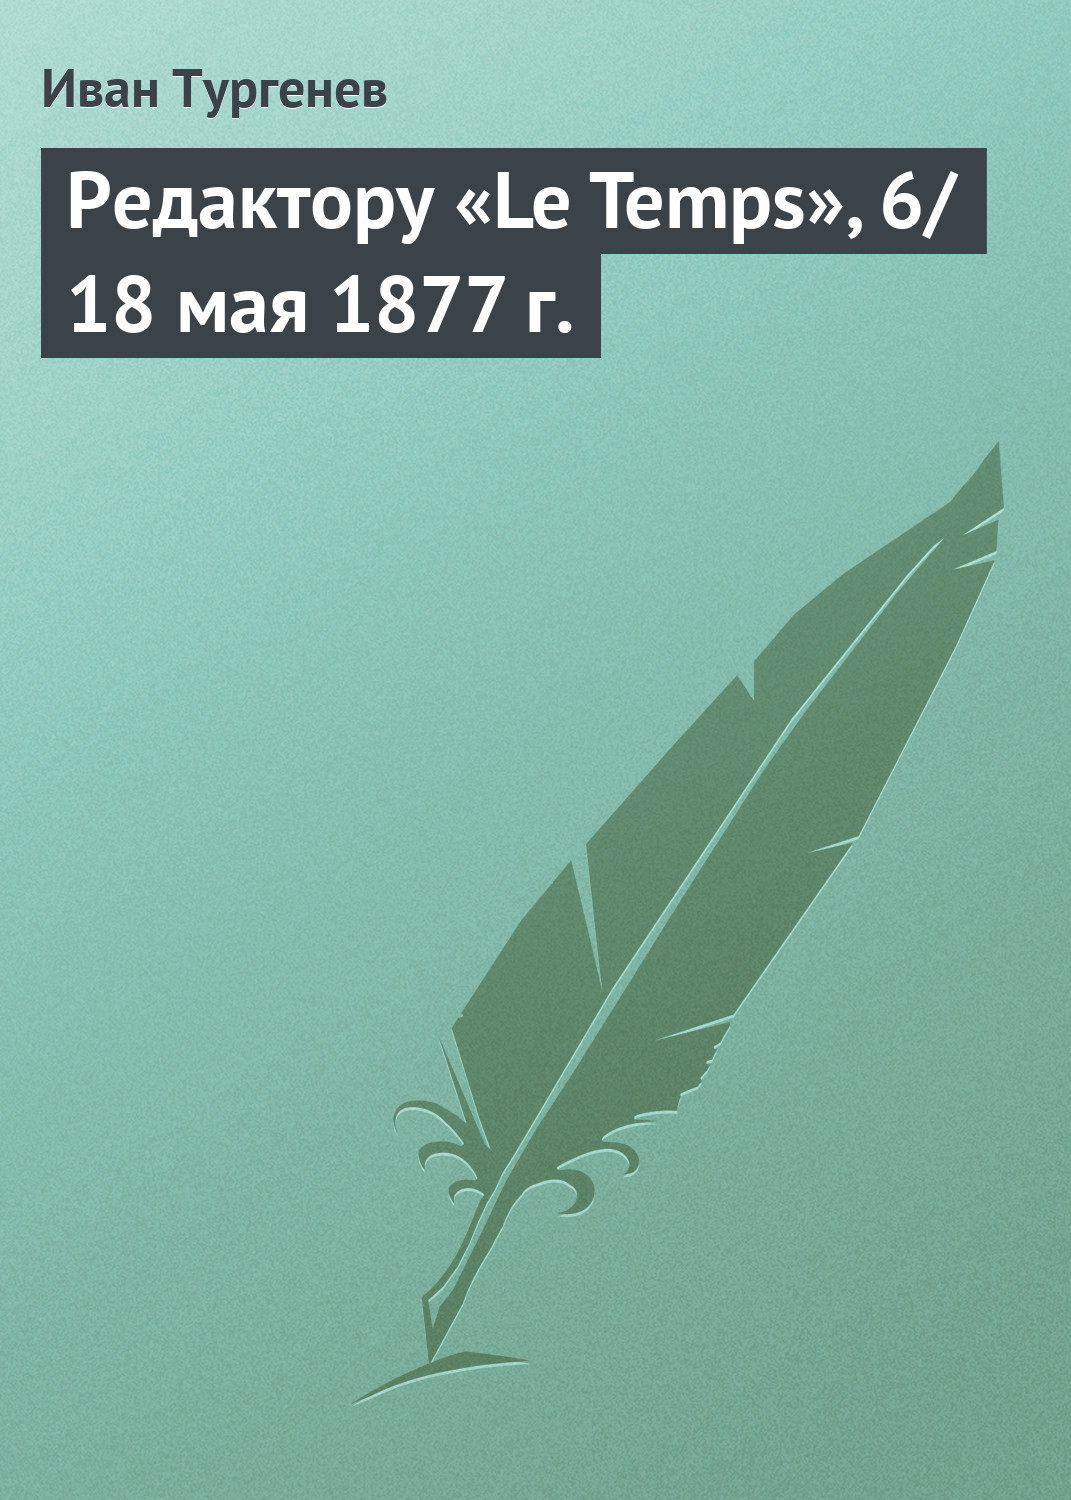 Книга Редактору «Le Temps», 6/18 мая 1877 г. из серии , созданная Иван Тургенев, может относится к жанру Публицистика: прочее. Стоимость электронной книги Редактору «Le Temps», 6/18 мая 1877 г. с идентификатором 3020215 составляет 5.99 руб.